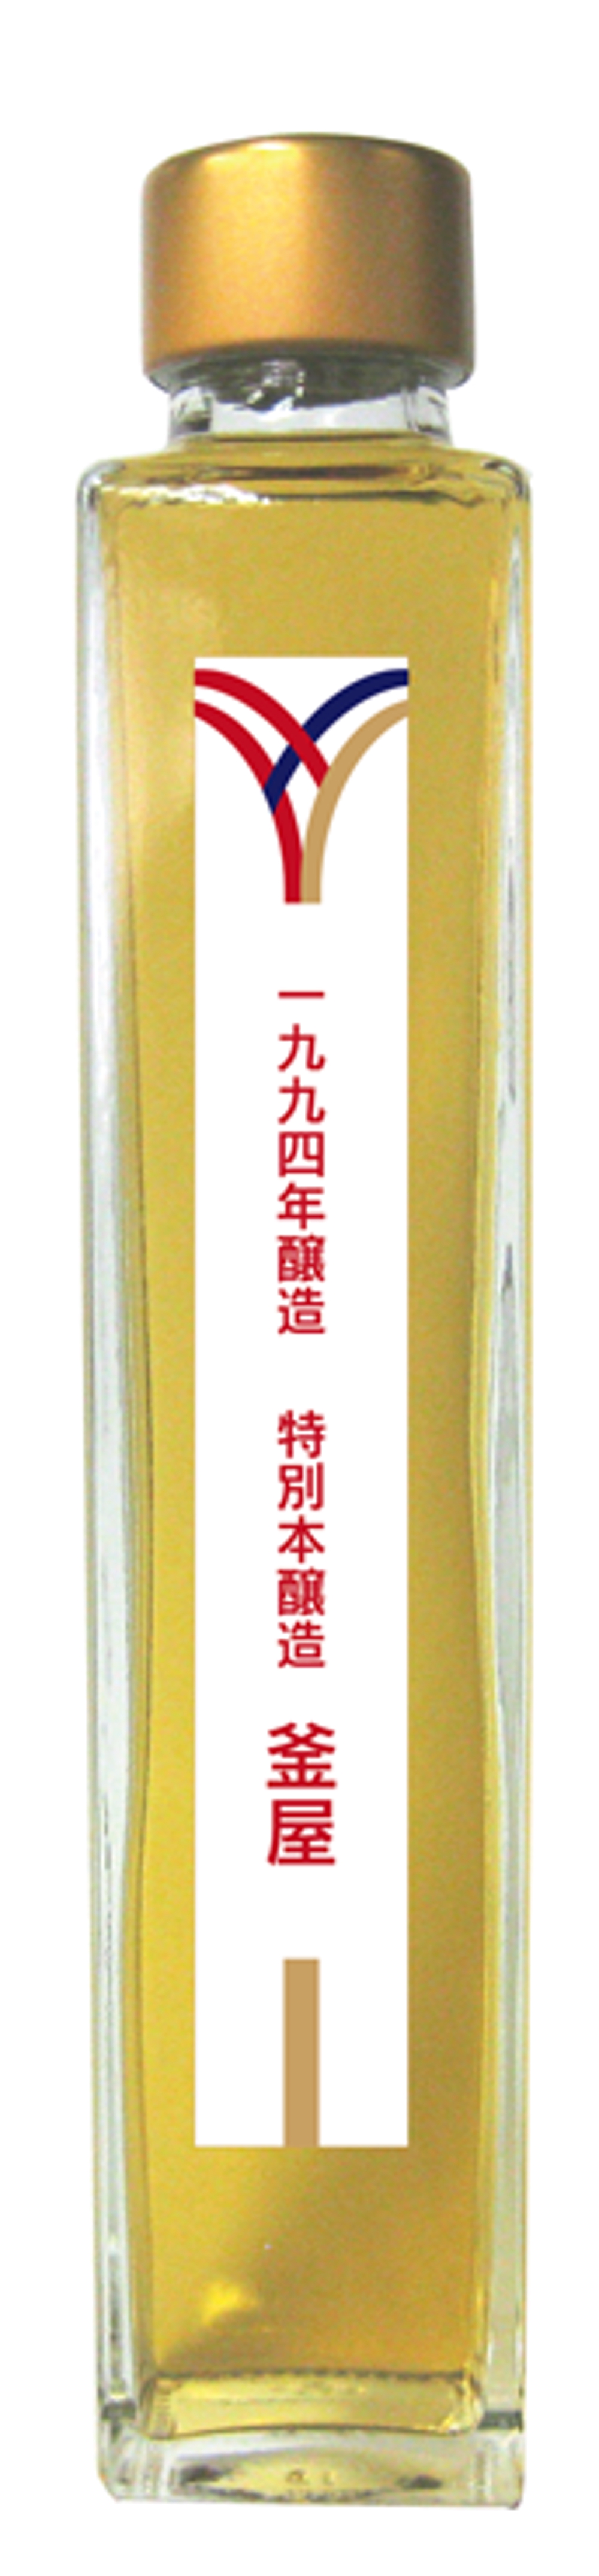 日本酒の古酒のラベルデザイン